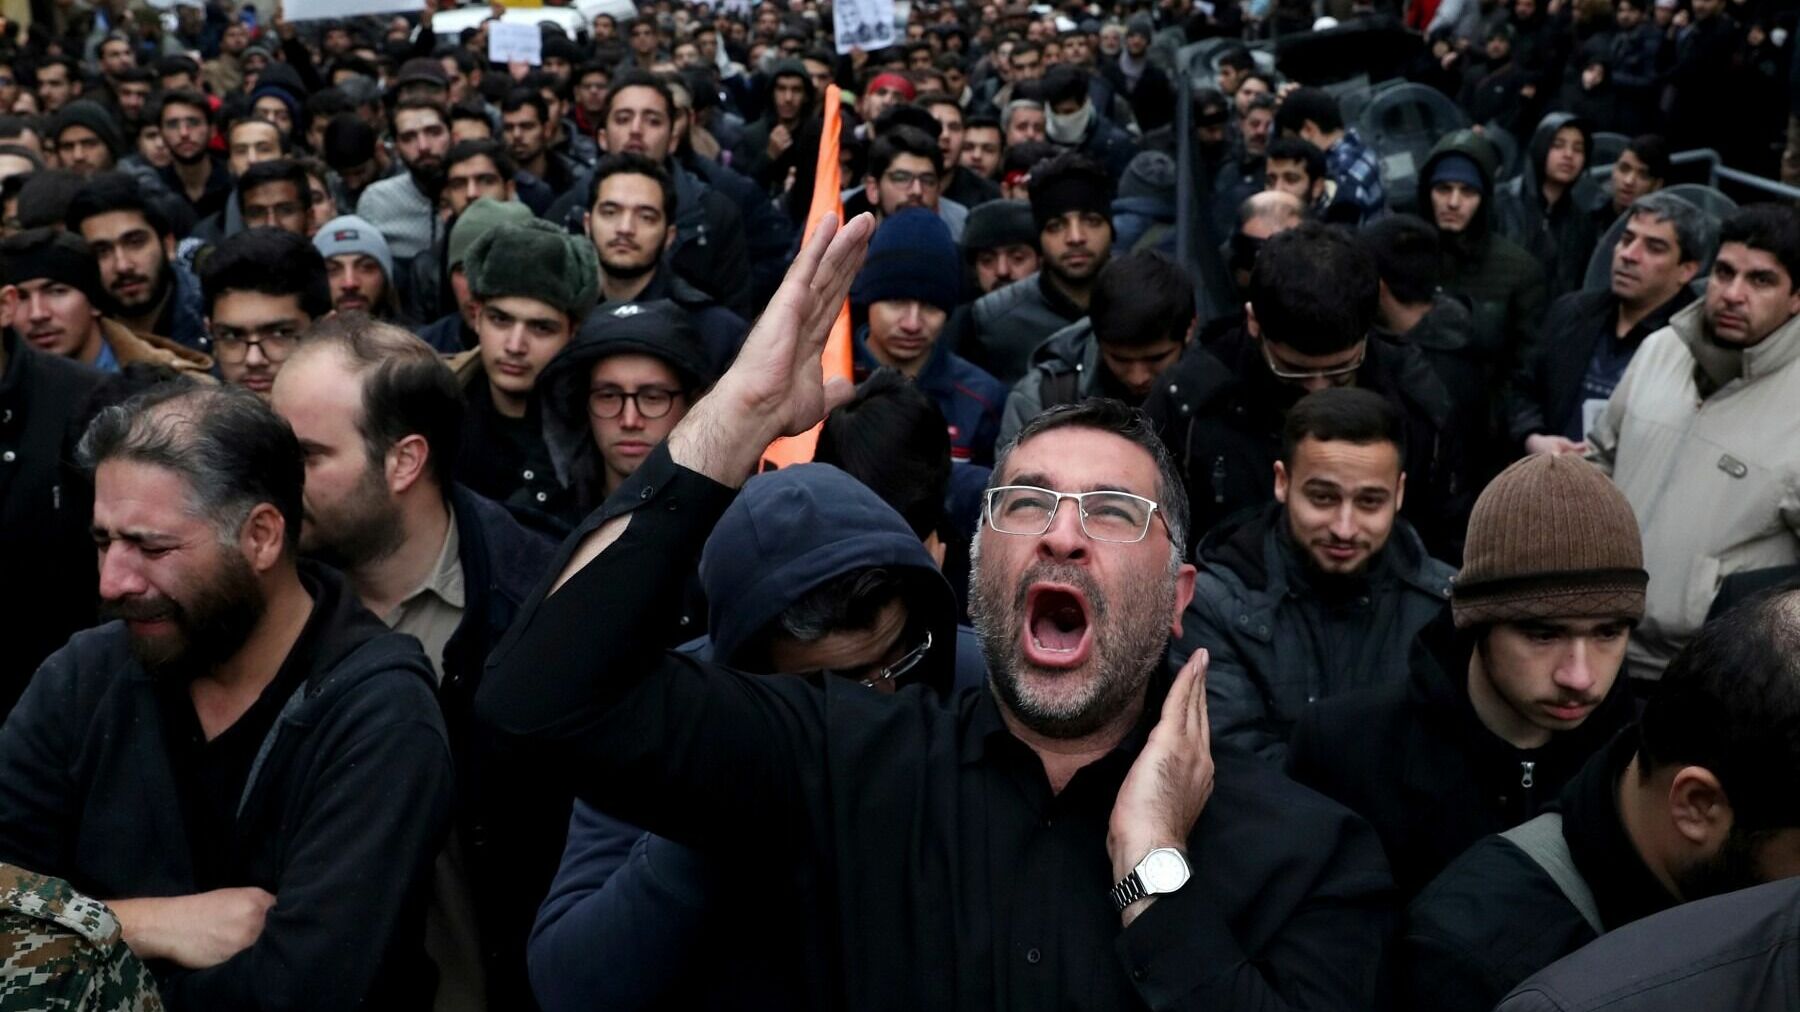 Al Arabia: В Иране возобновились акции протеста под лозунгом "Смерть диктатору!"